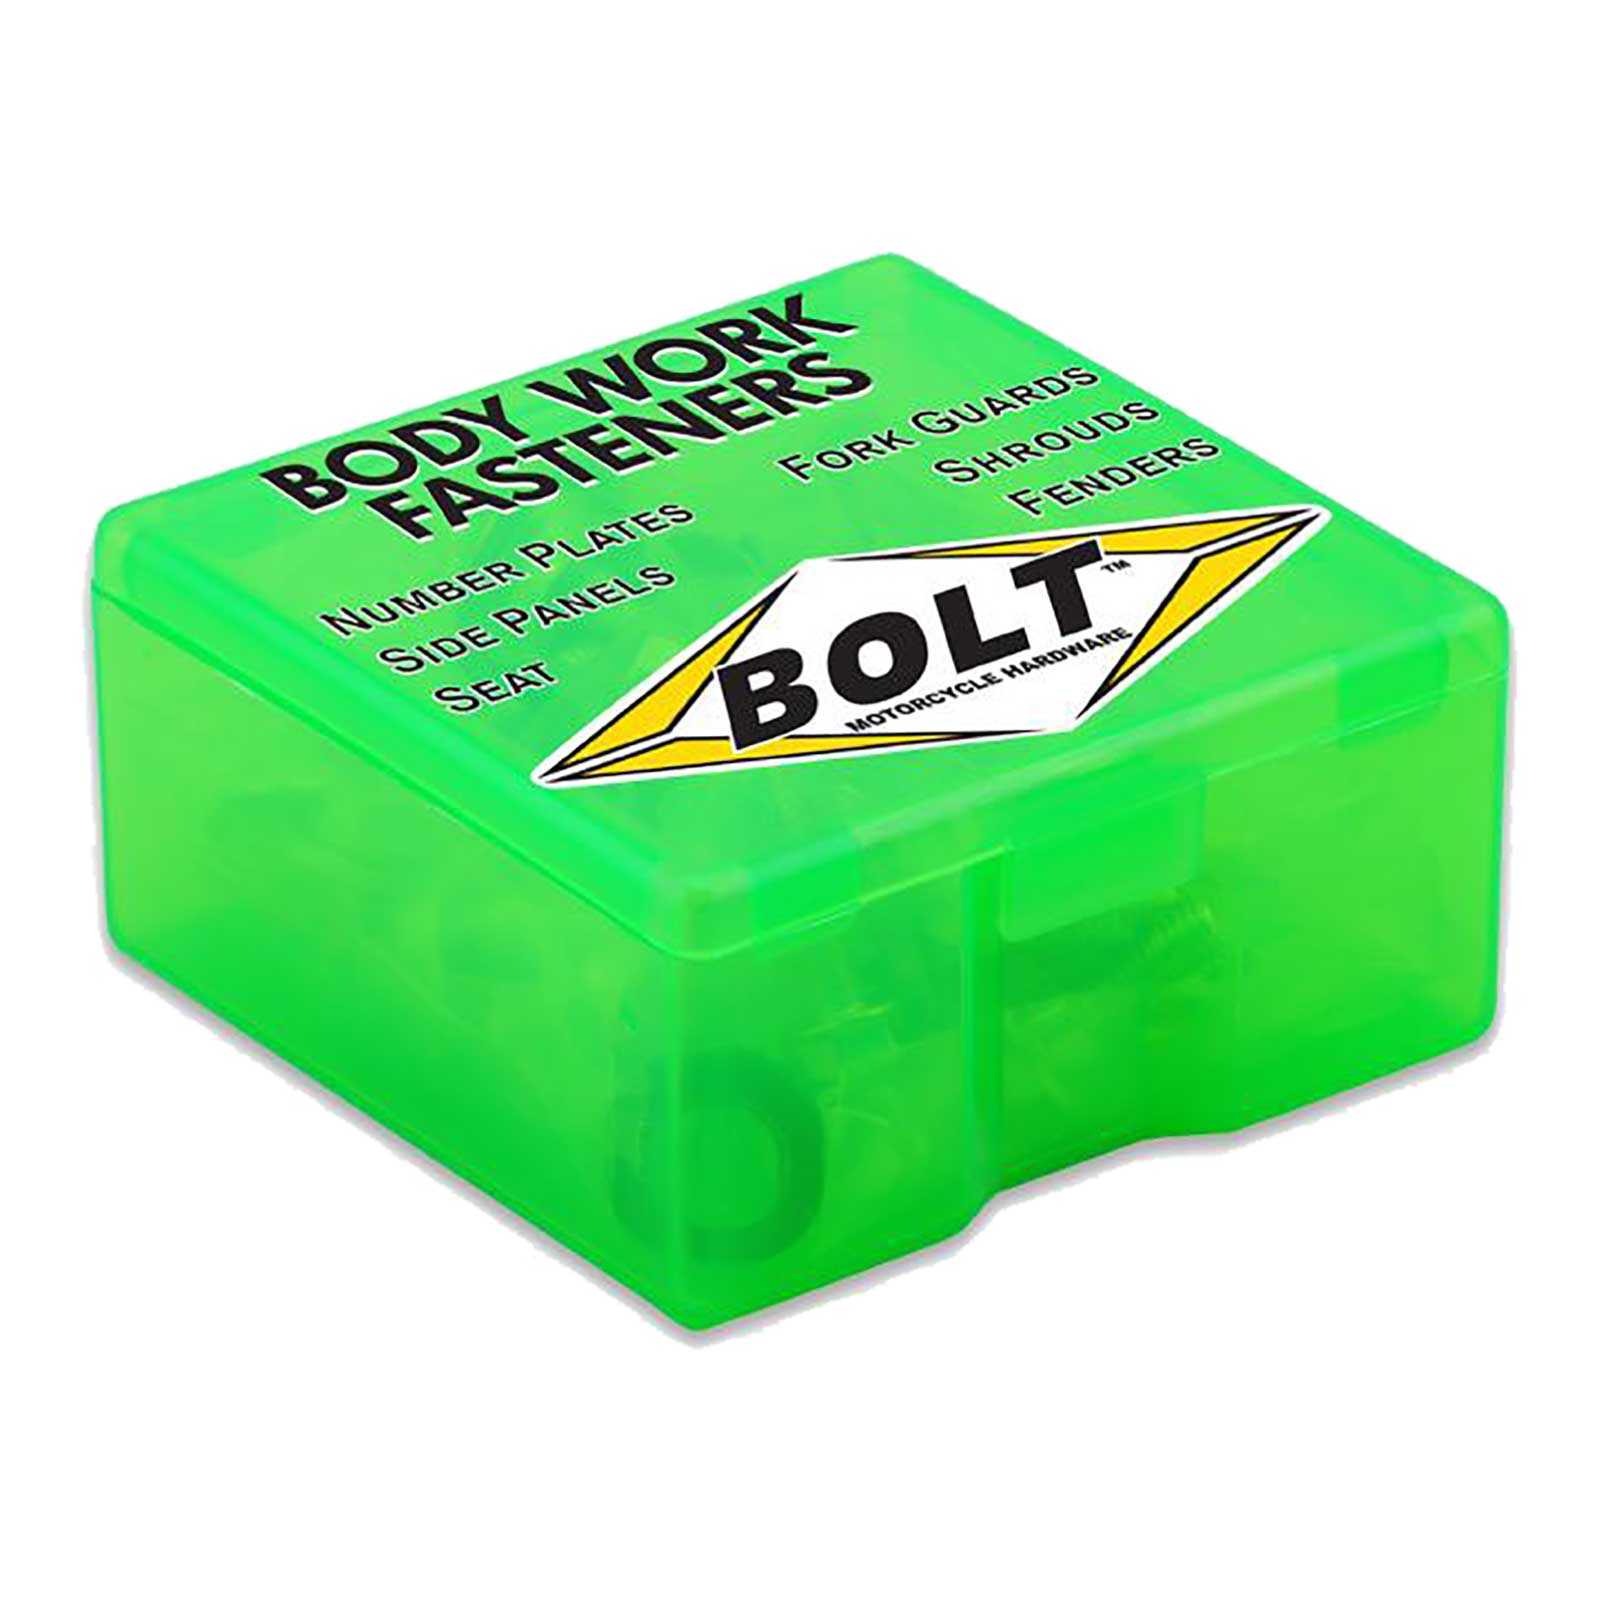 Bolt, BOLT BODY WORK FASTENER KIT KAW KX125/250 92-93